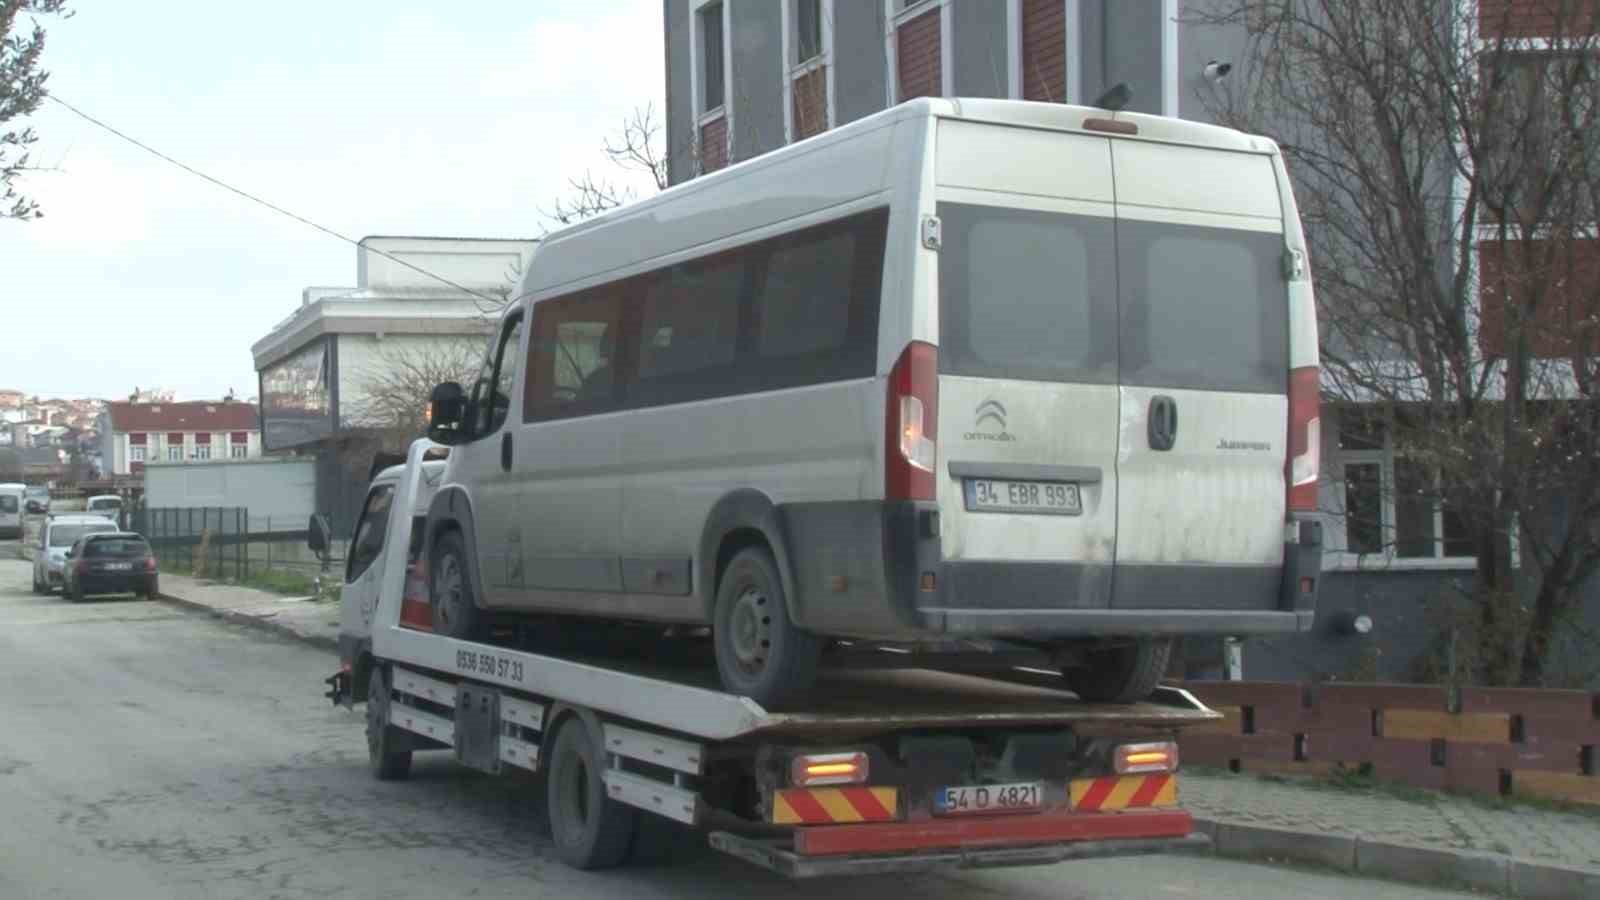 Arnavutköy’de servis minibüsünün çarptığı trafik polisi yaralandı
